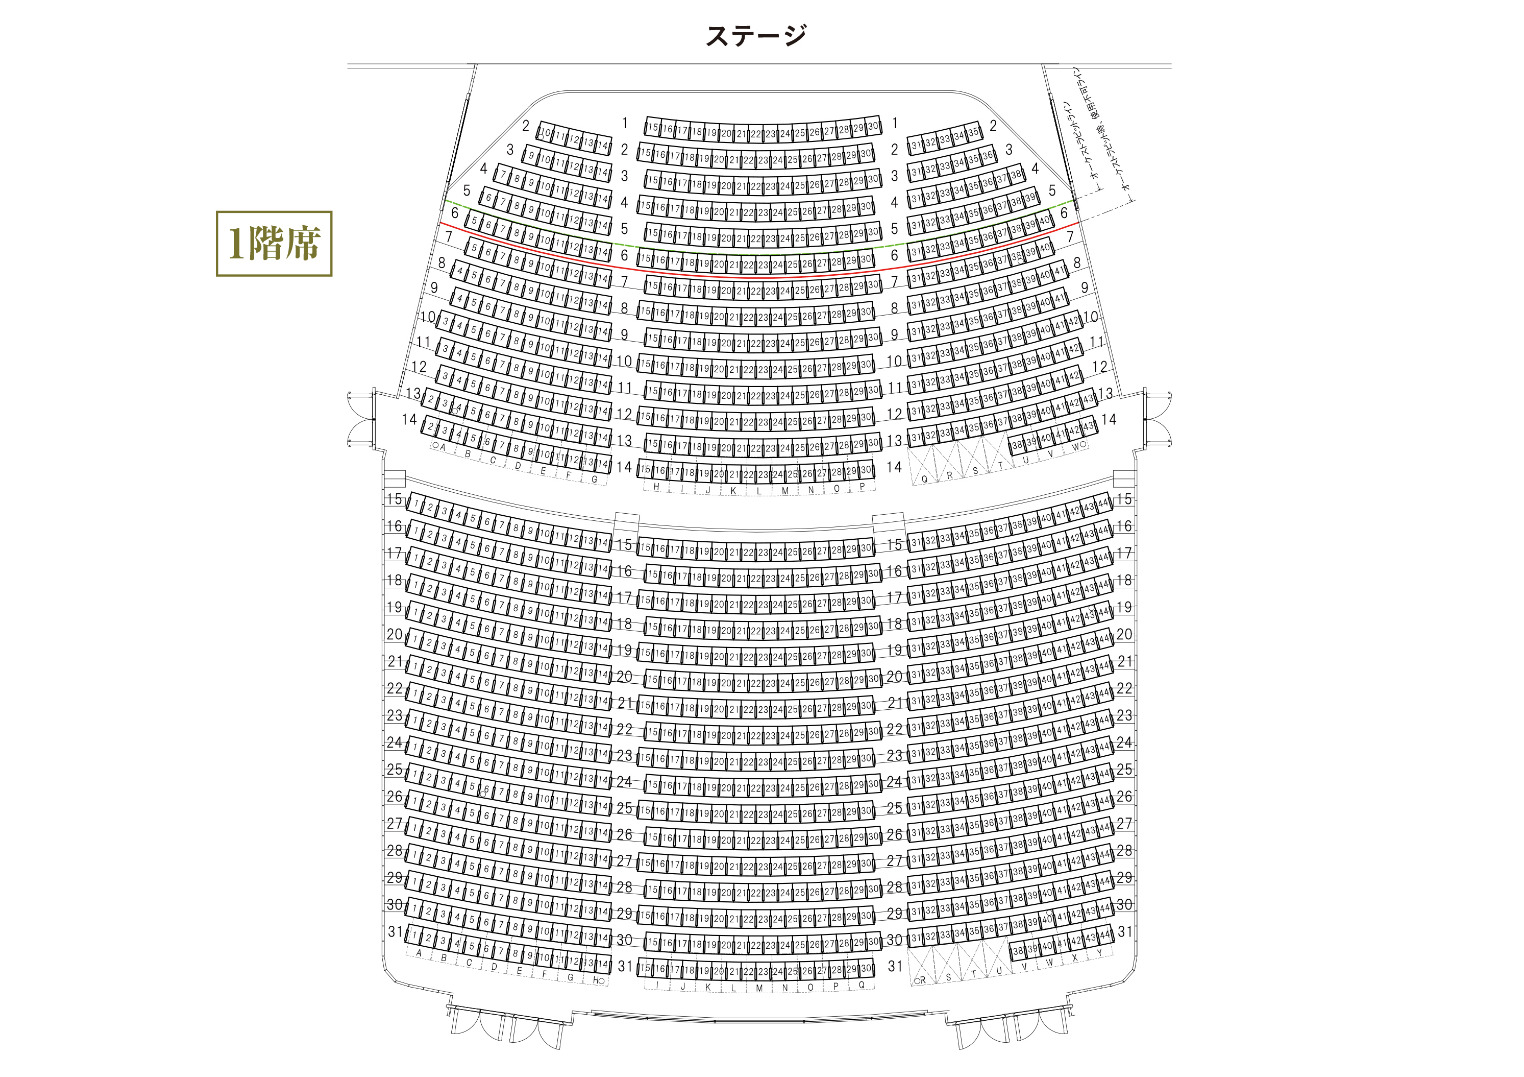 姫路市文化コンベンションセンター(アクリエひめじ)の座席表 大ホール1F